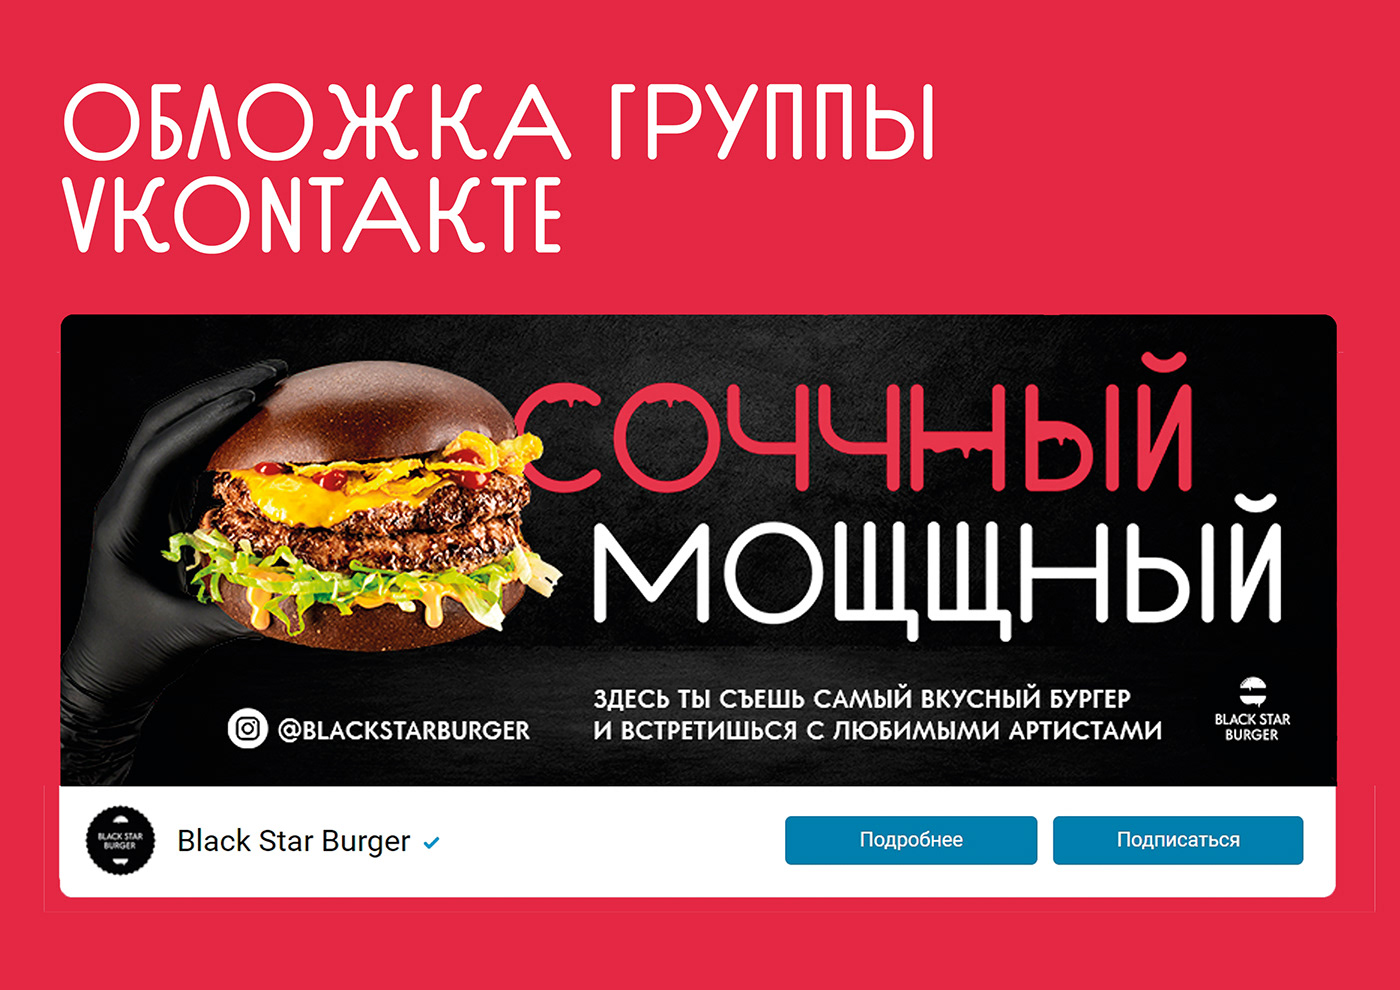 blackstarburger бургер вконтакте оформление графический дизайн дизайн Дизайн соц сетей инстаграм реклама ресторан социальные сети